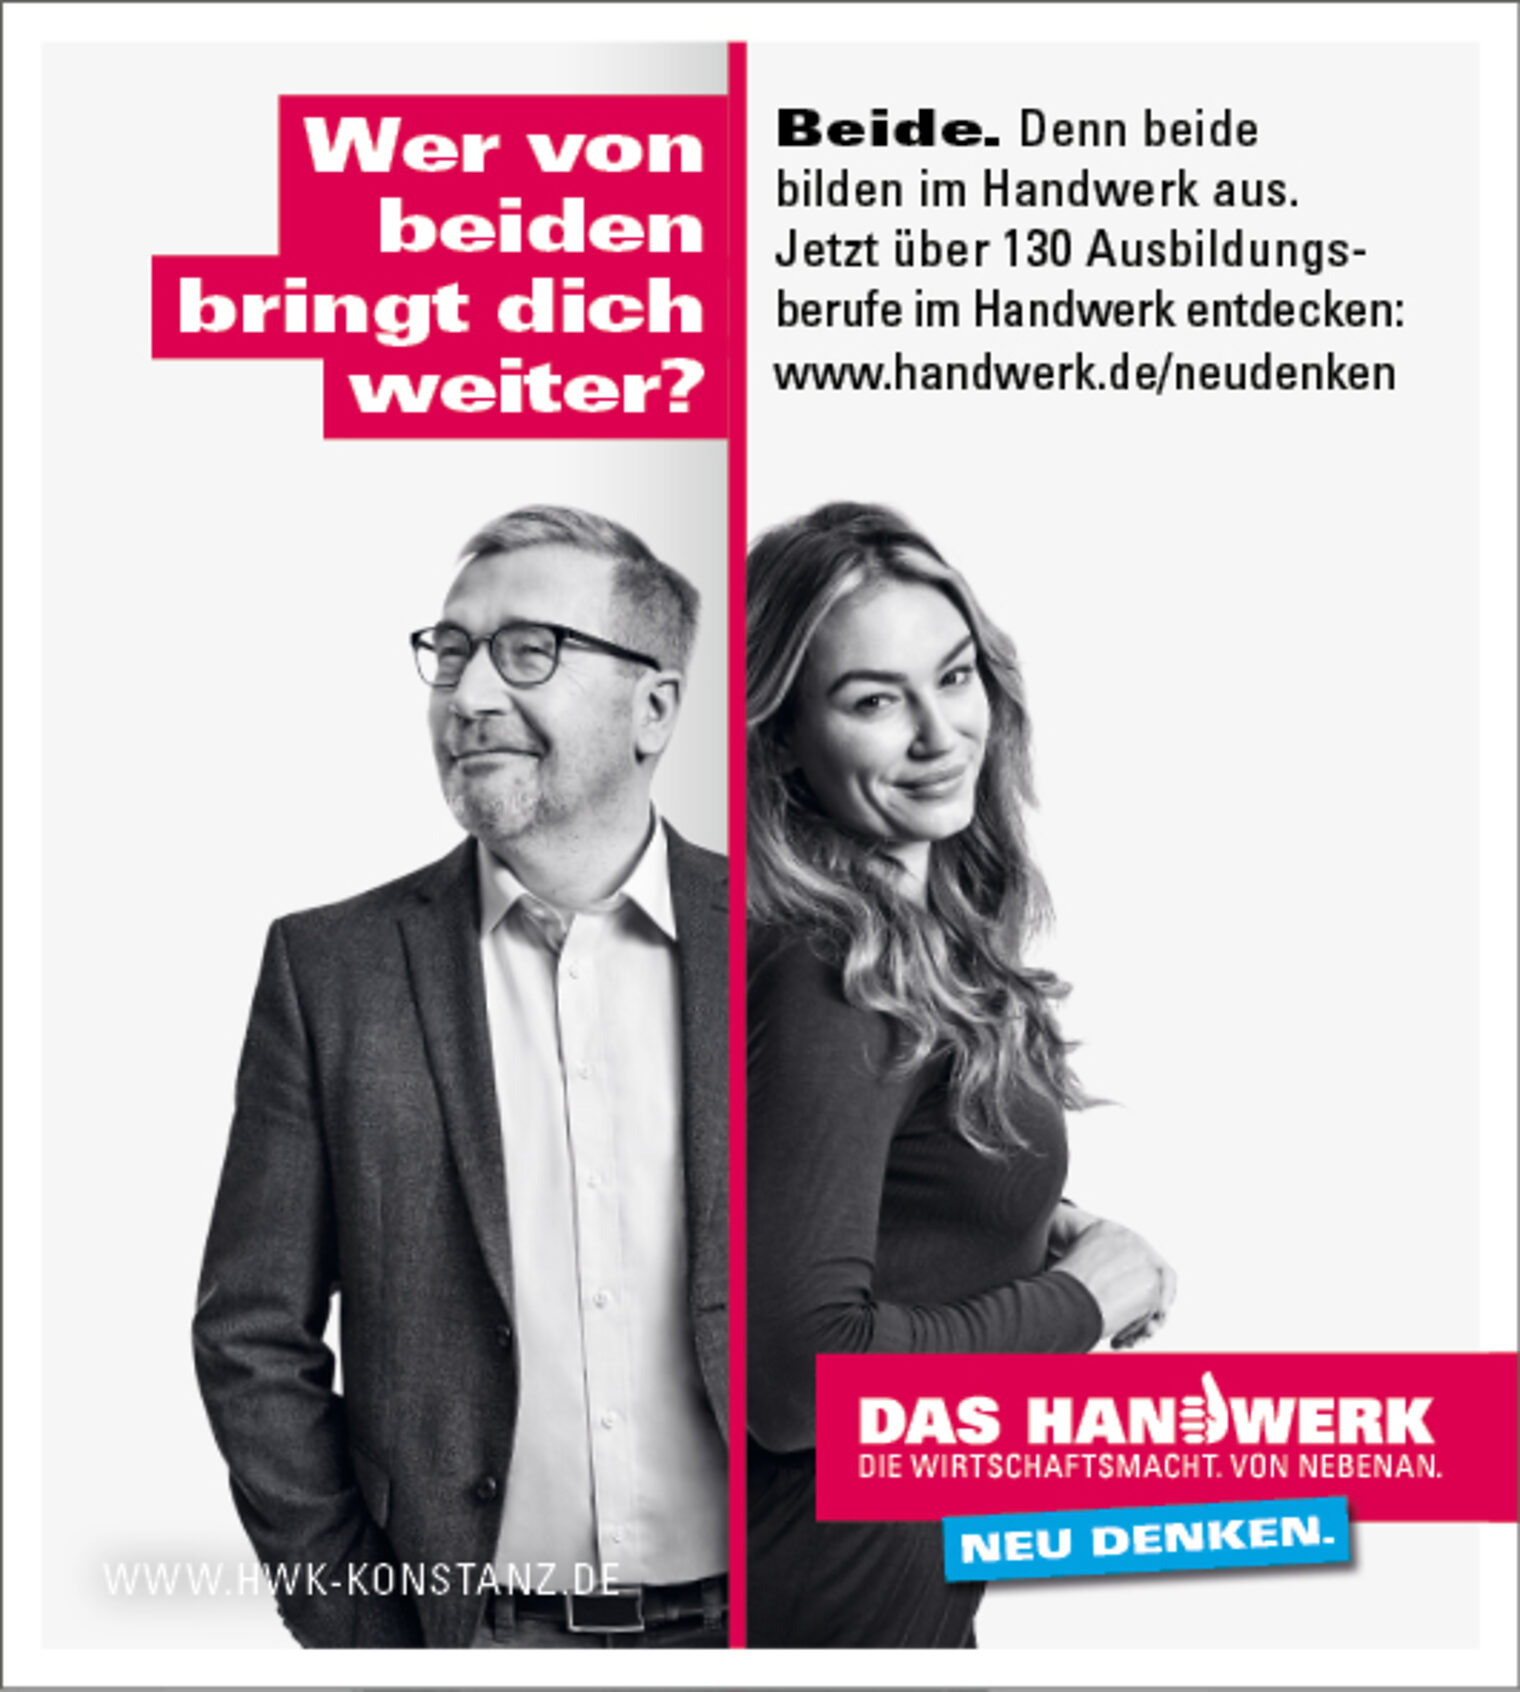 Anzeigenmotiv der Imagekampagne des deutschen Handwerks: Mann und Frau mit Spruch: "Wer von beiden bringt dich weiter?"